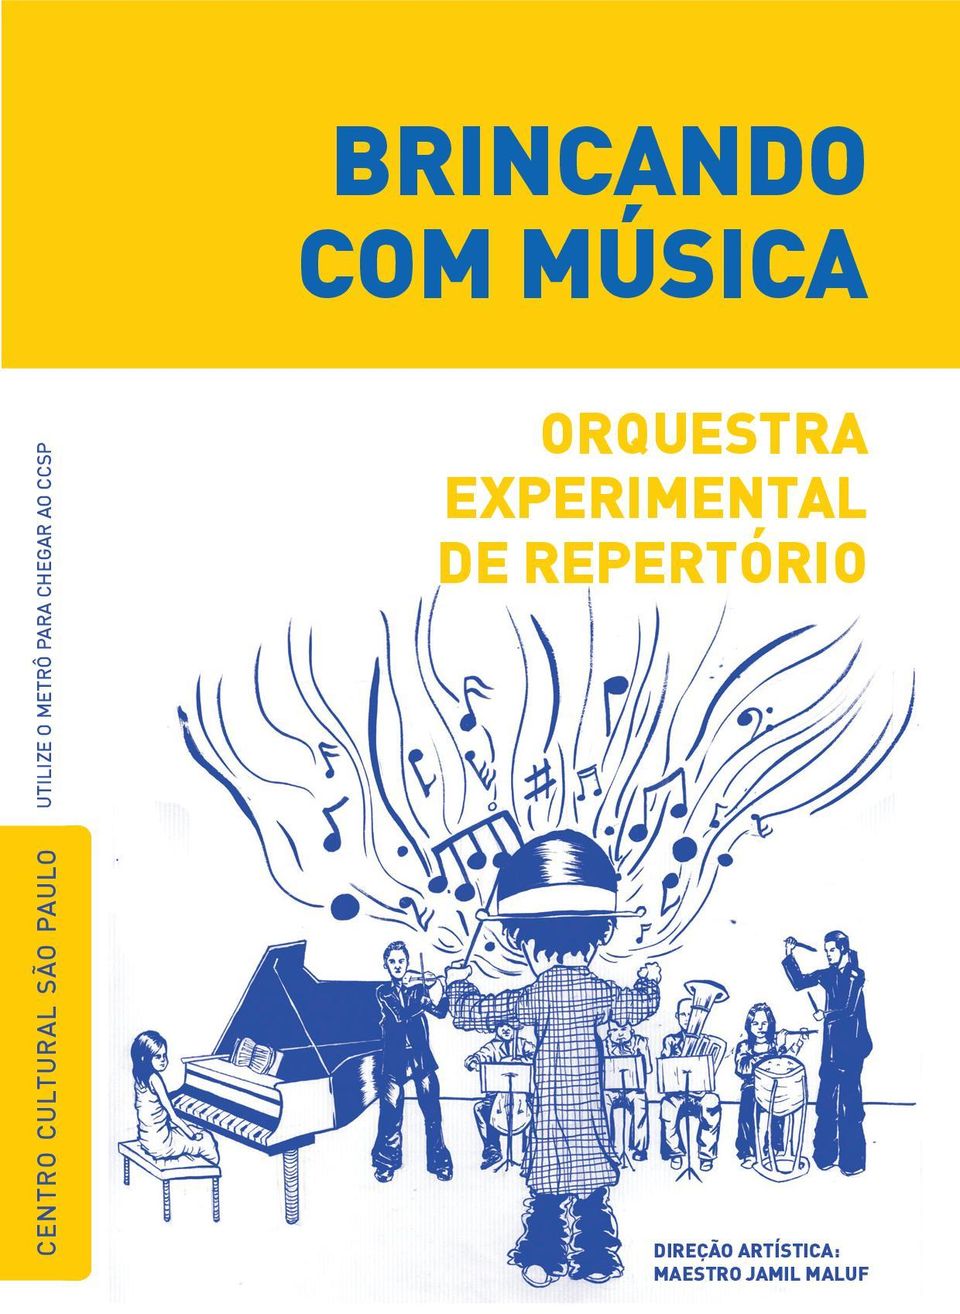 AO CCSP orquestra experimental de